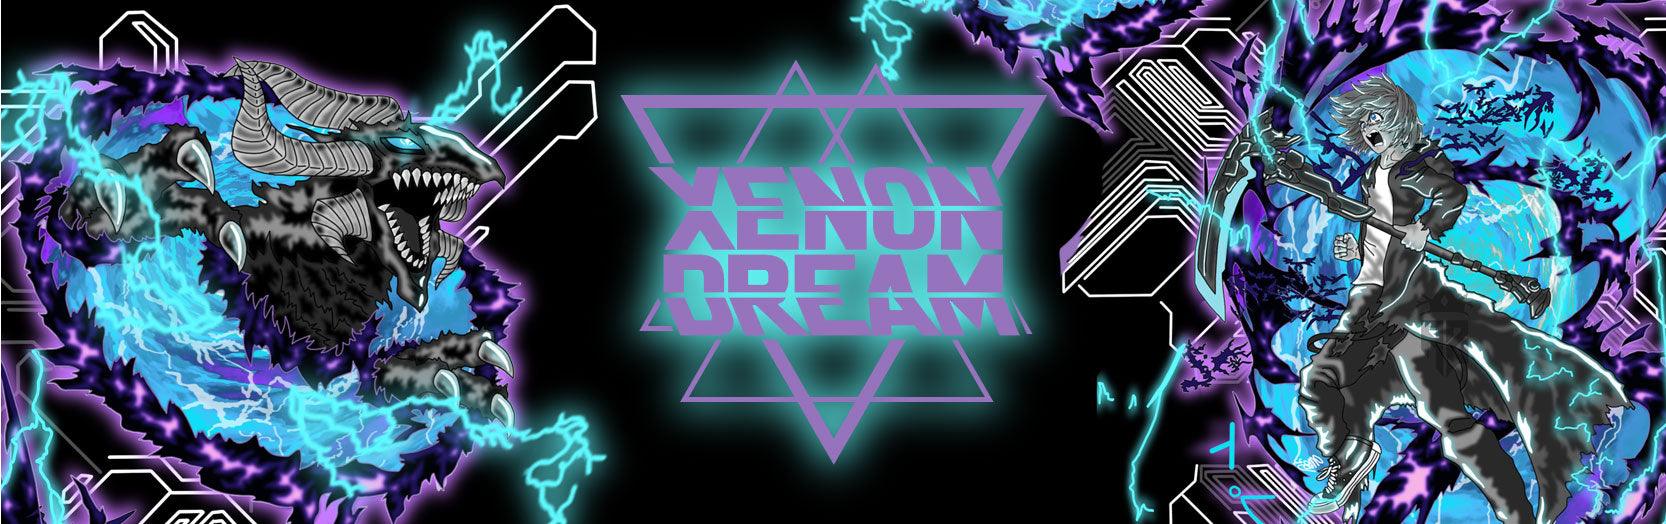 Xenon Dream - Scott Atomic™ merchandise